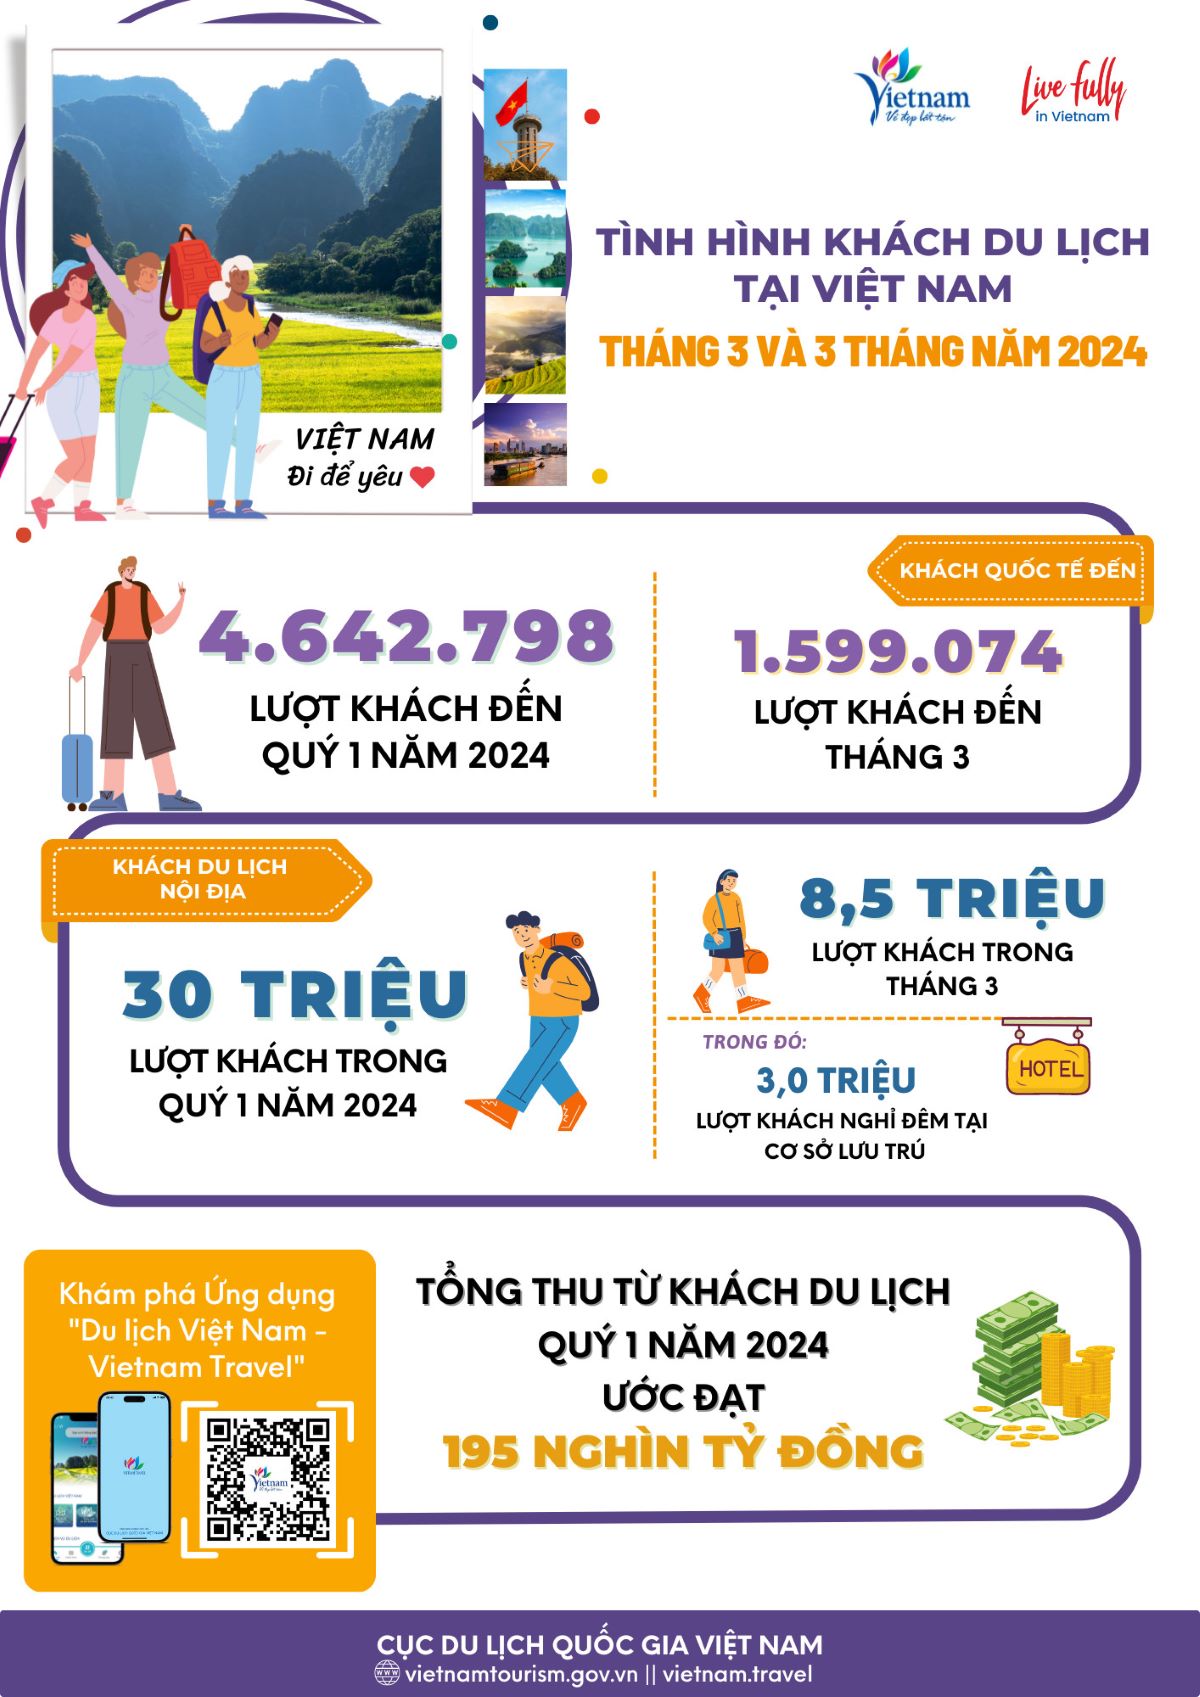 [Infographic] Tình hình khách du lịch tháng 3 và 3 tháng đầu năm 2024